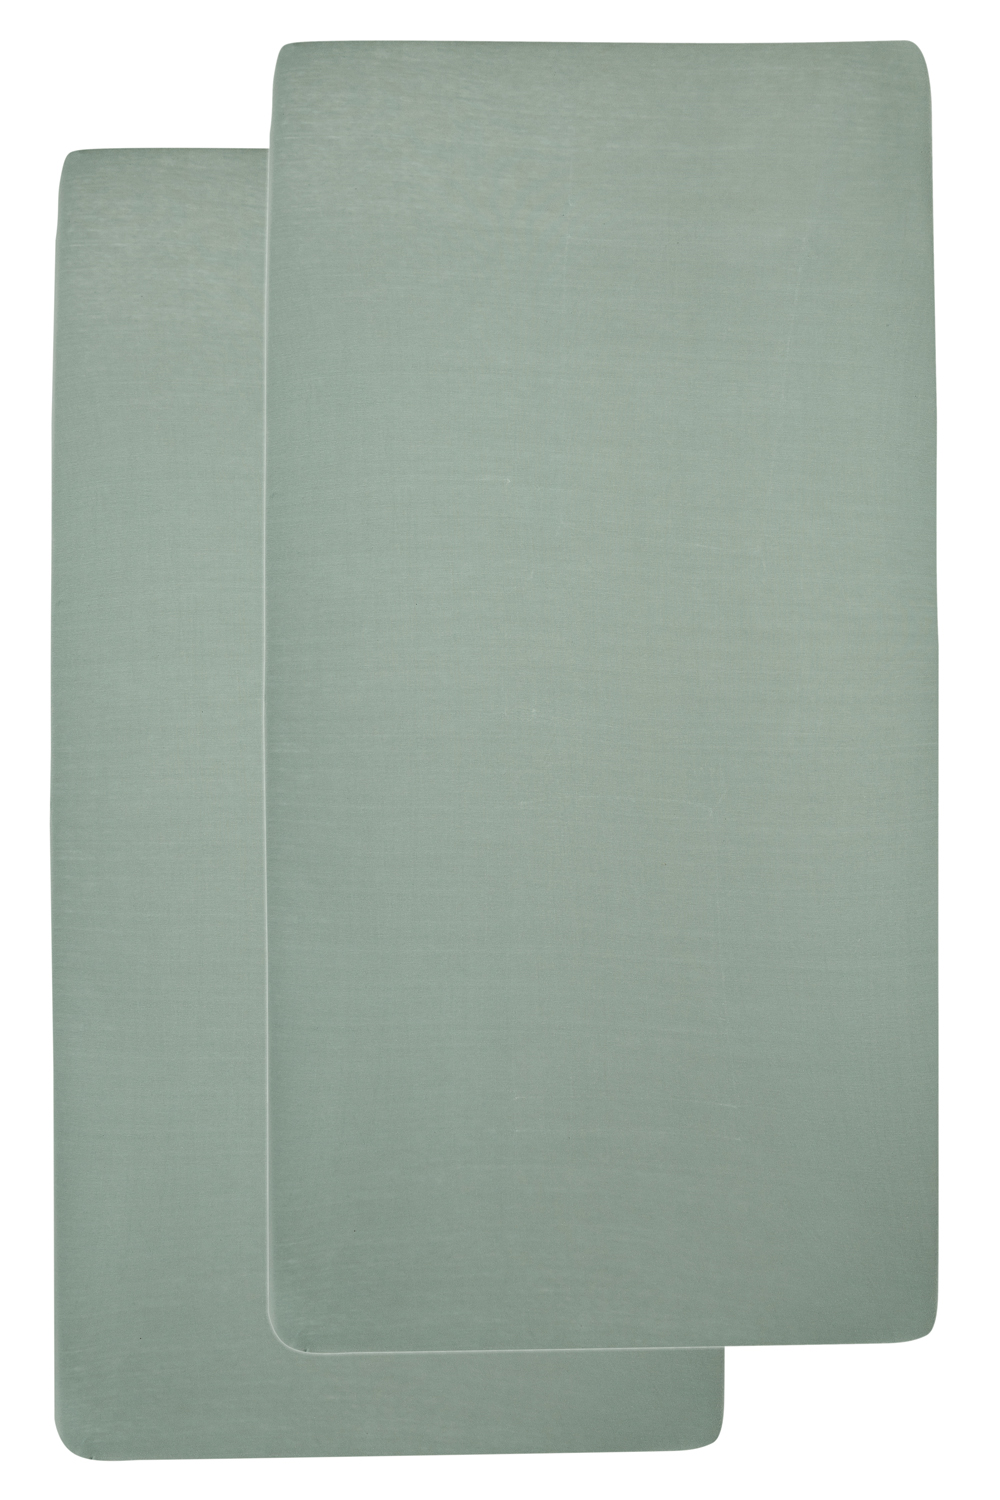 Hoeslaken ledikant 2-pack Uni - stone green - 60x120cm